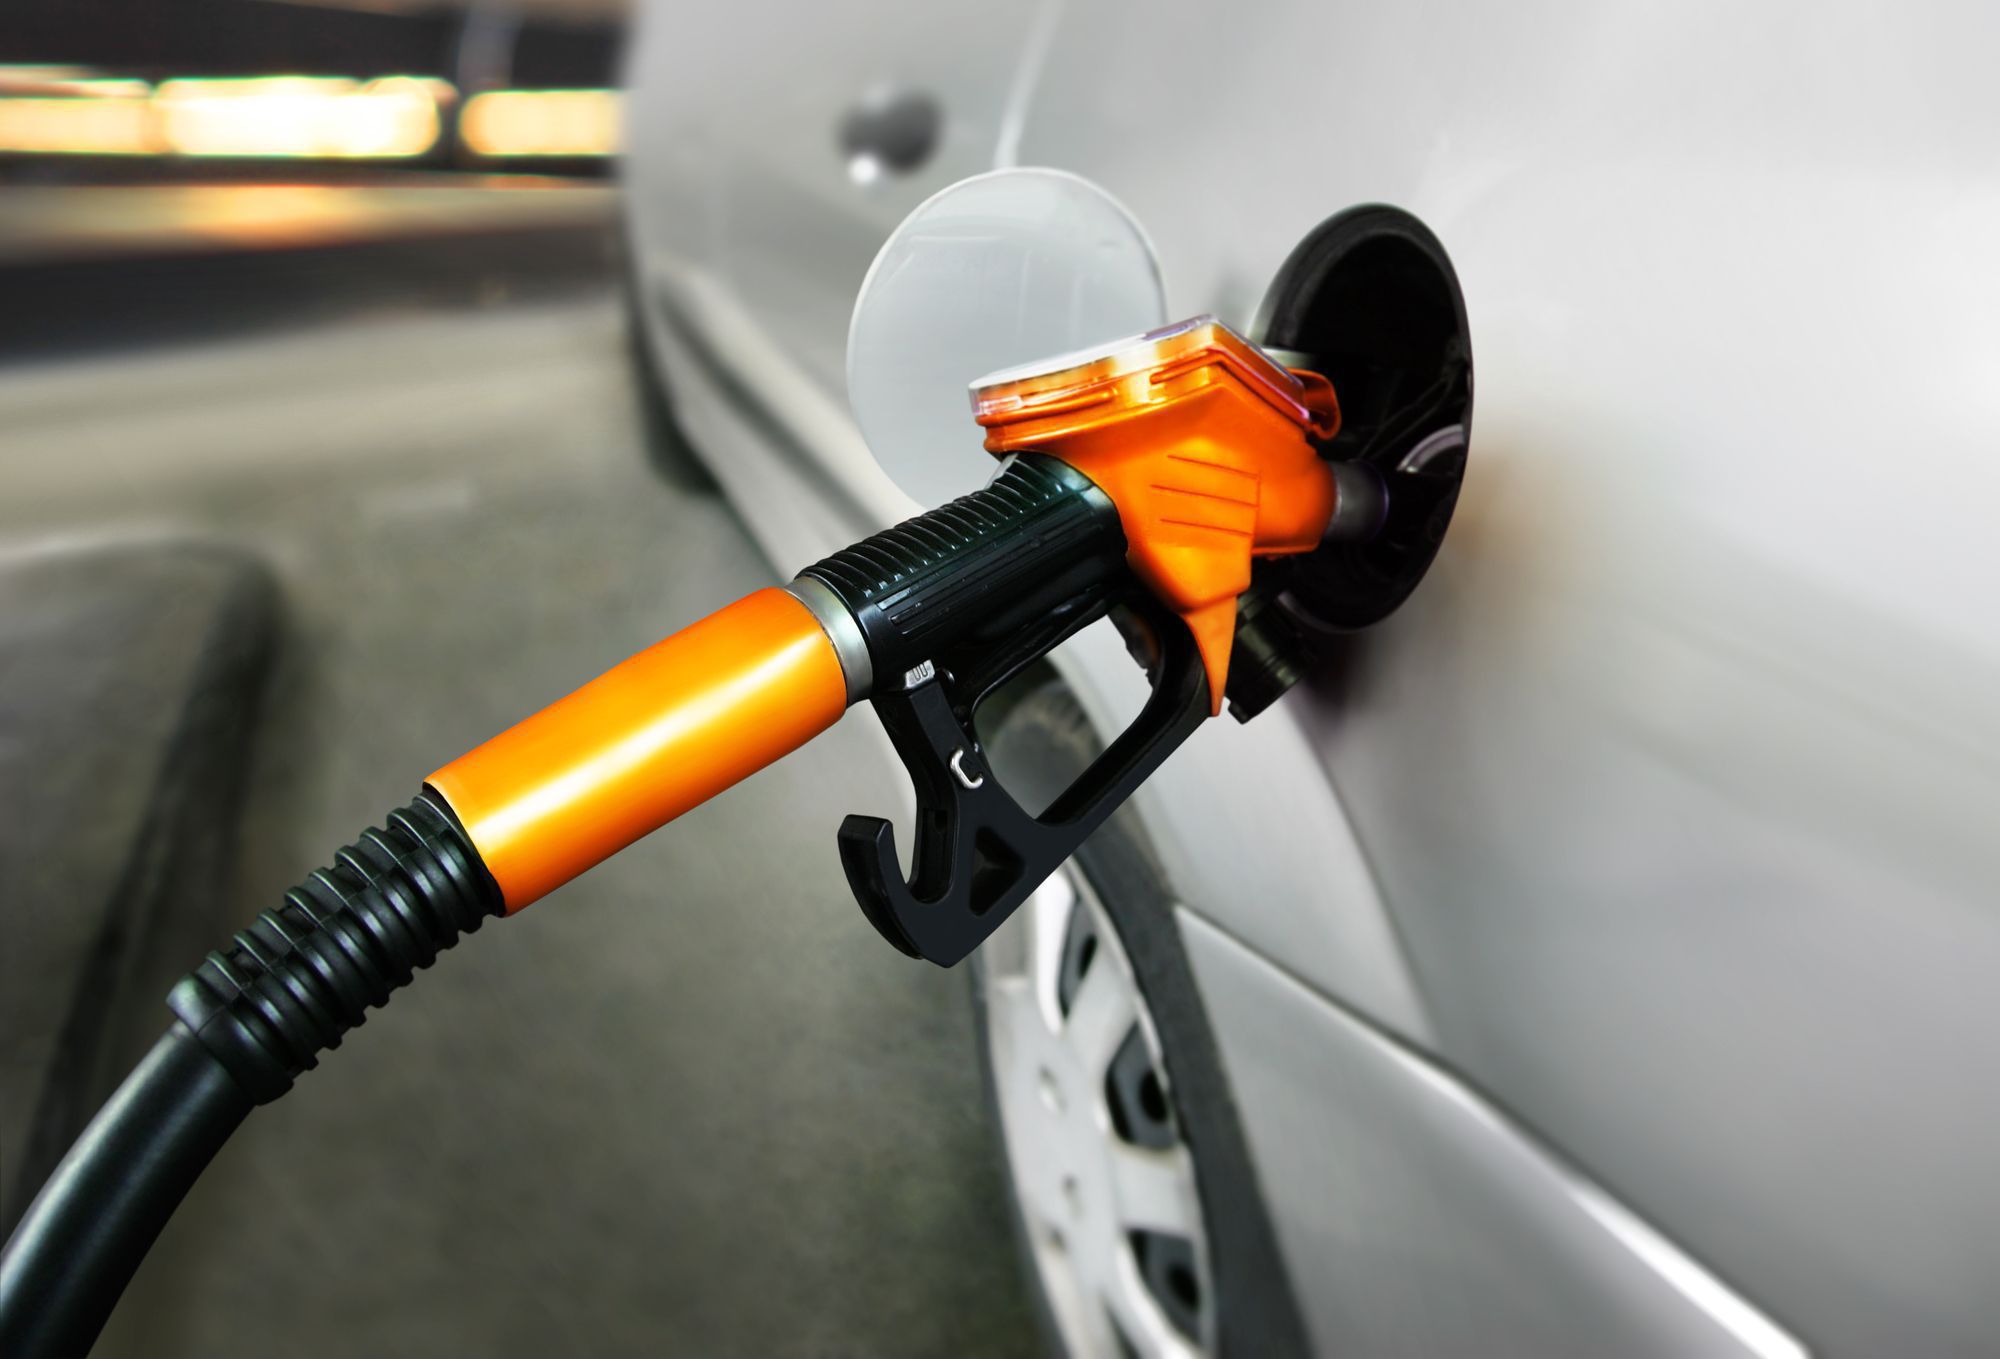 Mas, afinal, quais as dicas para economizar combustível no carro automático?